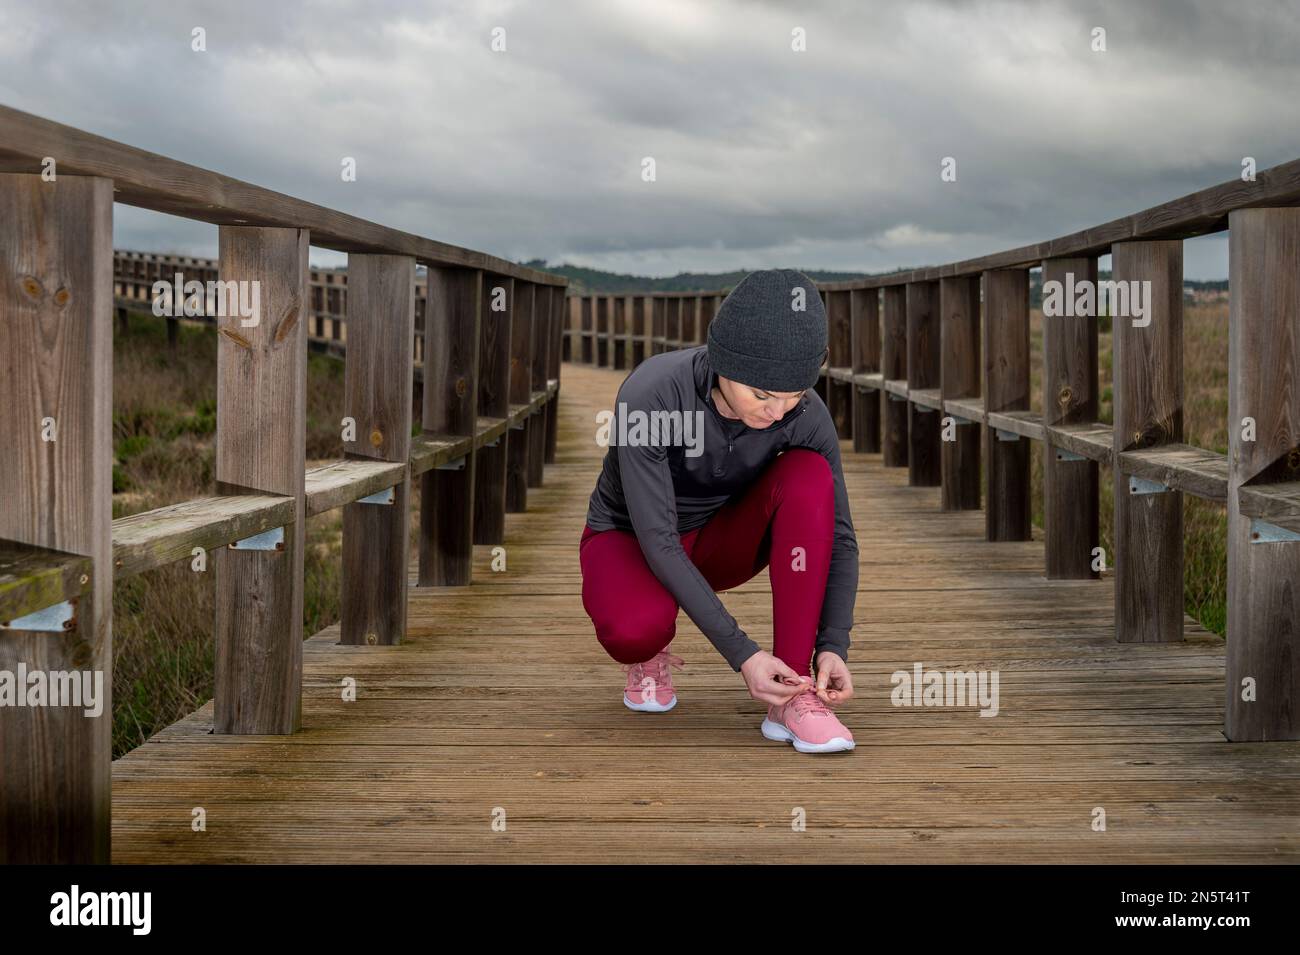 Mujer jogger atando su cordón de zapatos, preparación para una carrera en un paseo marítimo de madera Foto de stock